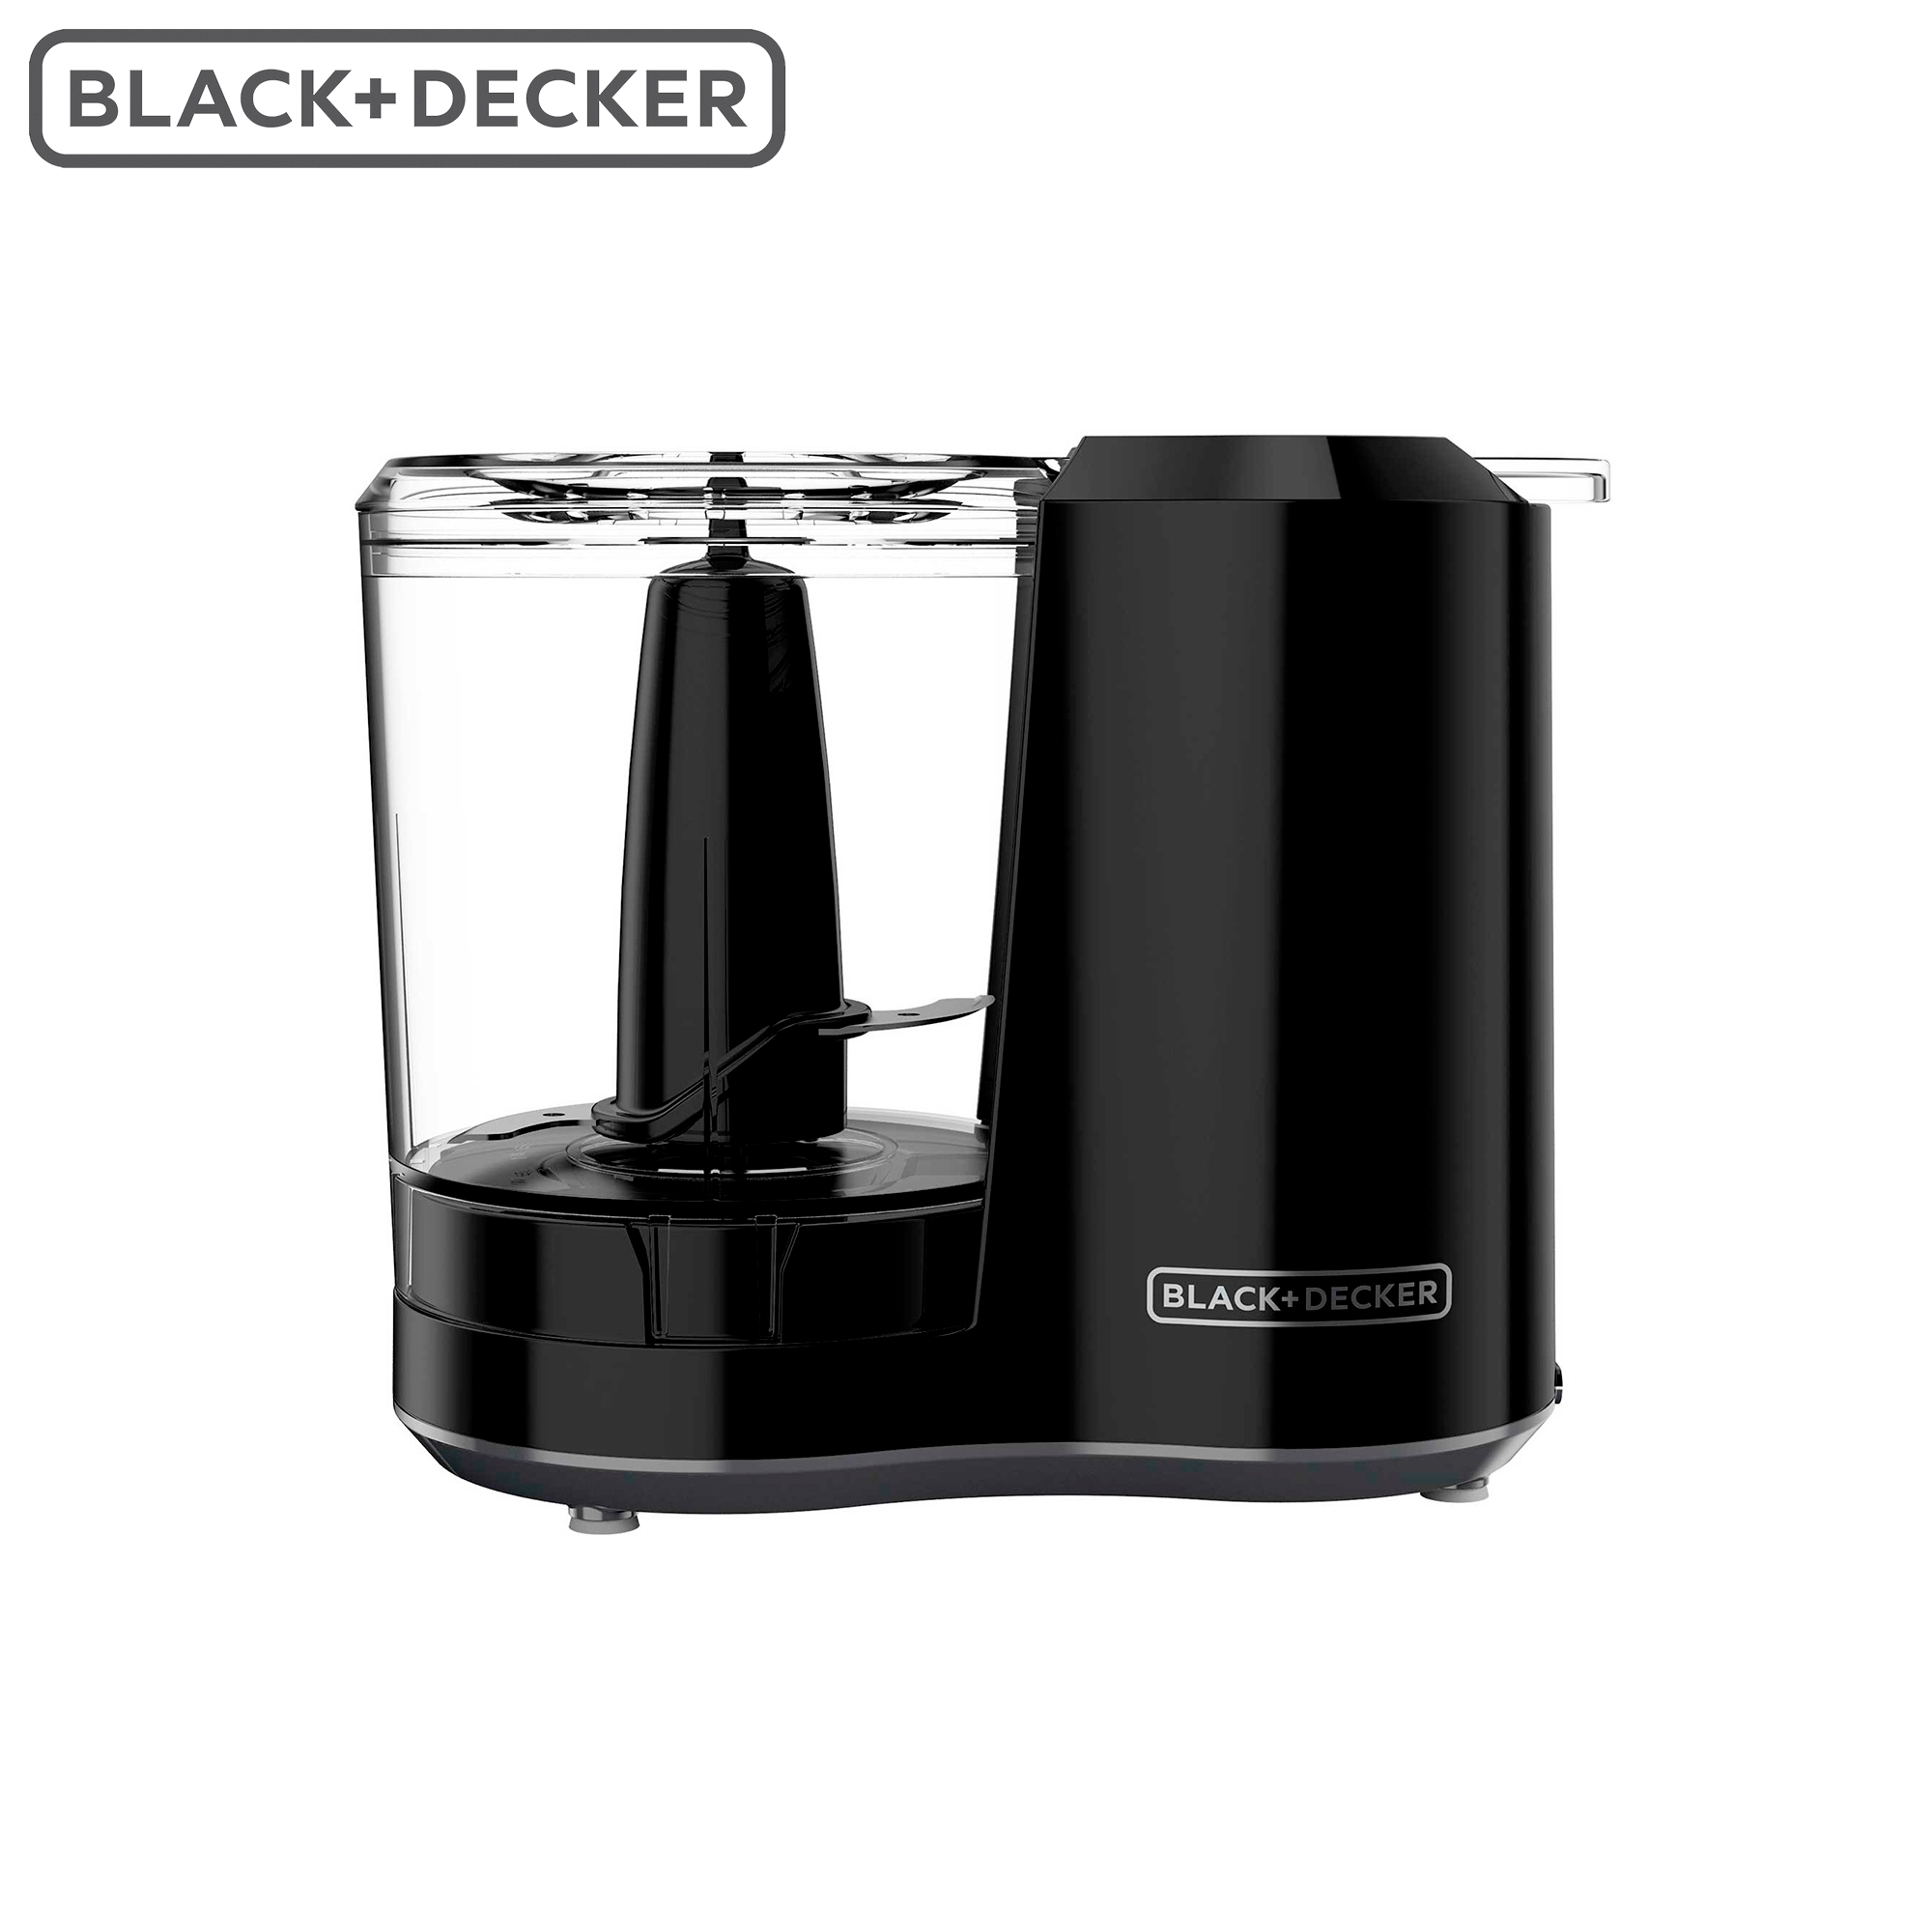 Cafetera 4 en 1 Black+Decker - Multimax Store